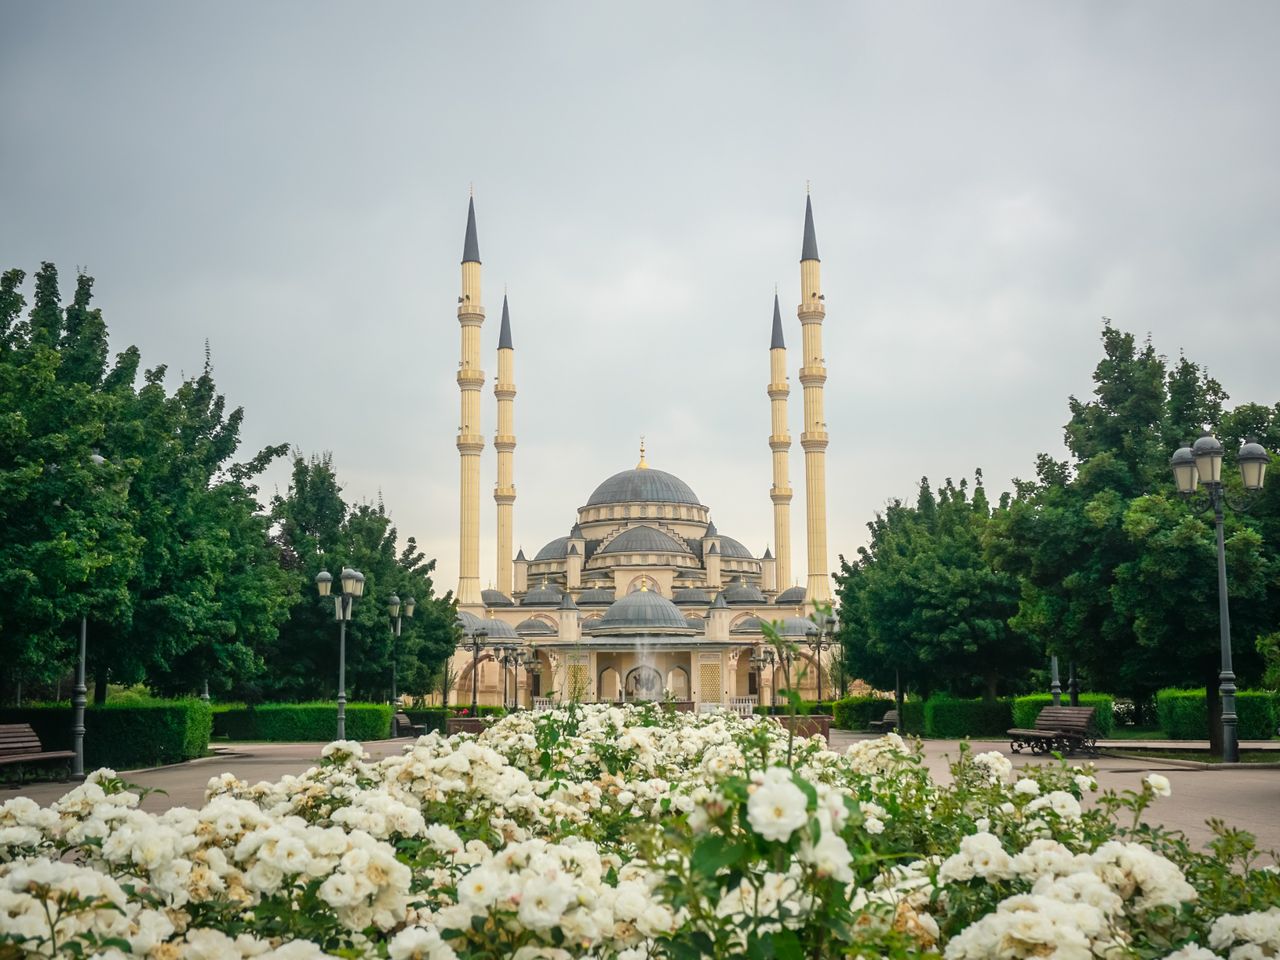 Поездка из Кисловодска в столицу Чечни | Цена 4500₽, отзывы, описание экскурсии